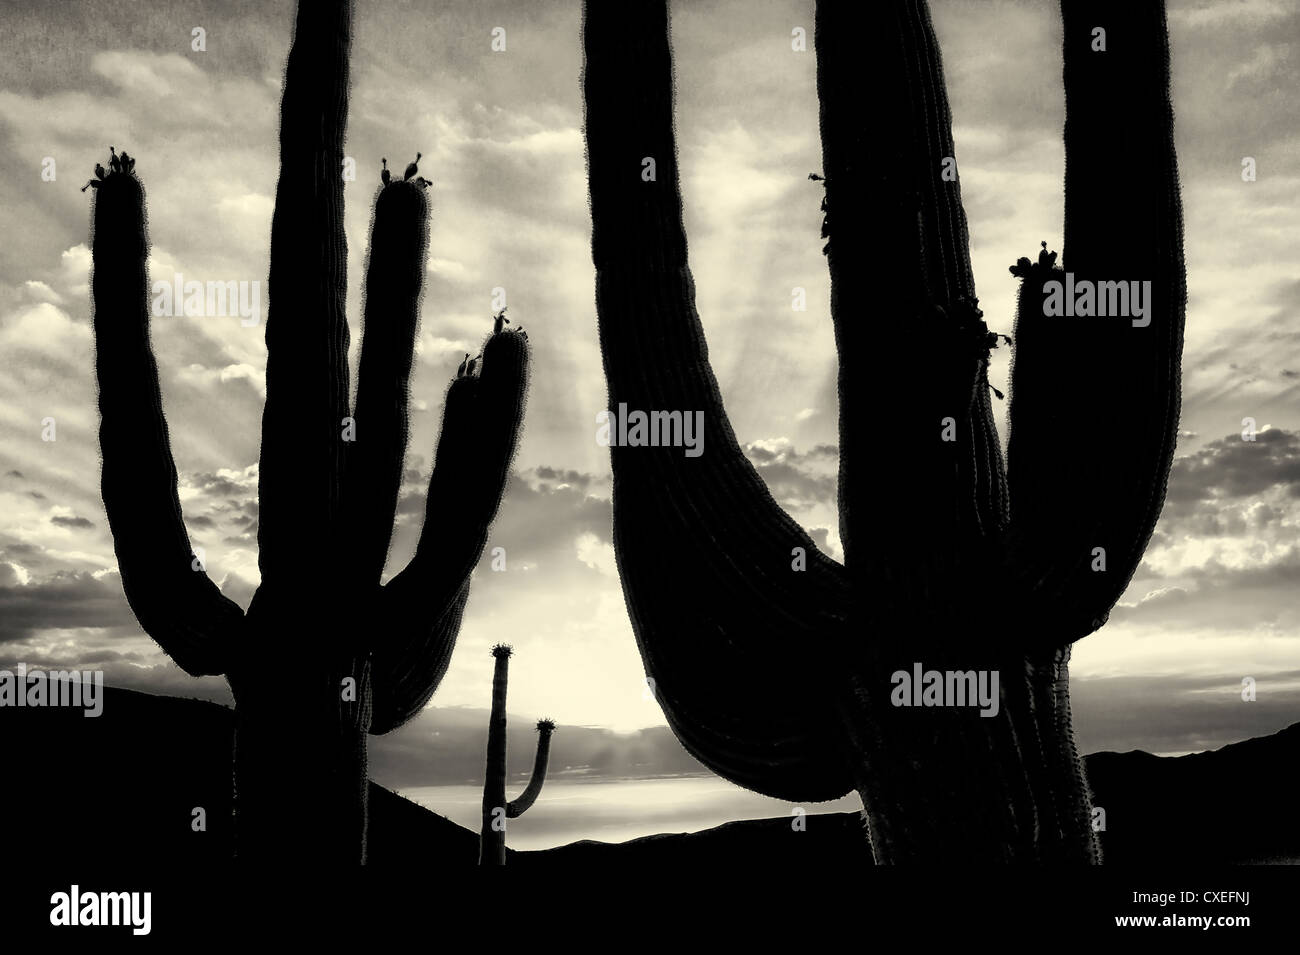 La silhouette du Saguaro cactus. Désert de Sonora, en Arizona. Banque D'Images